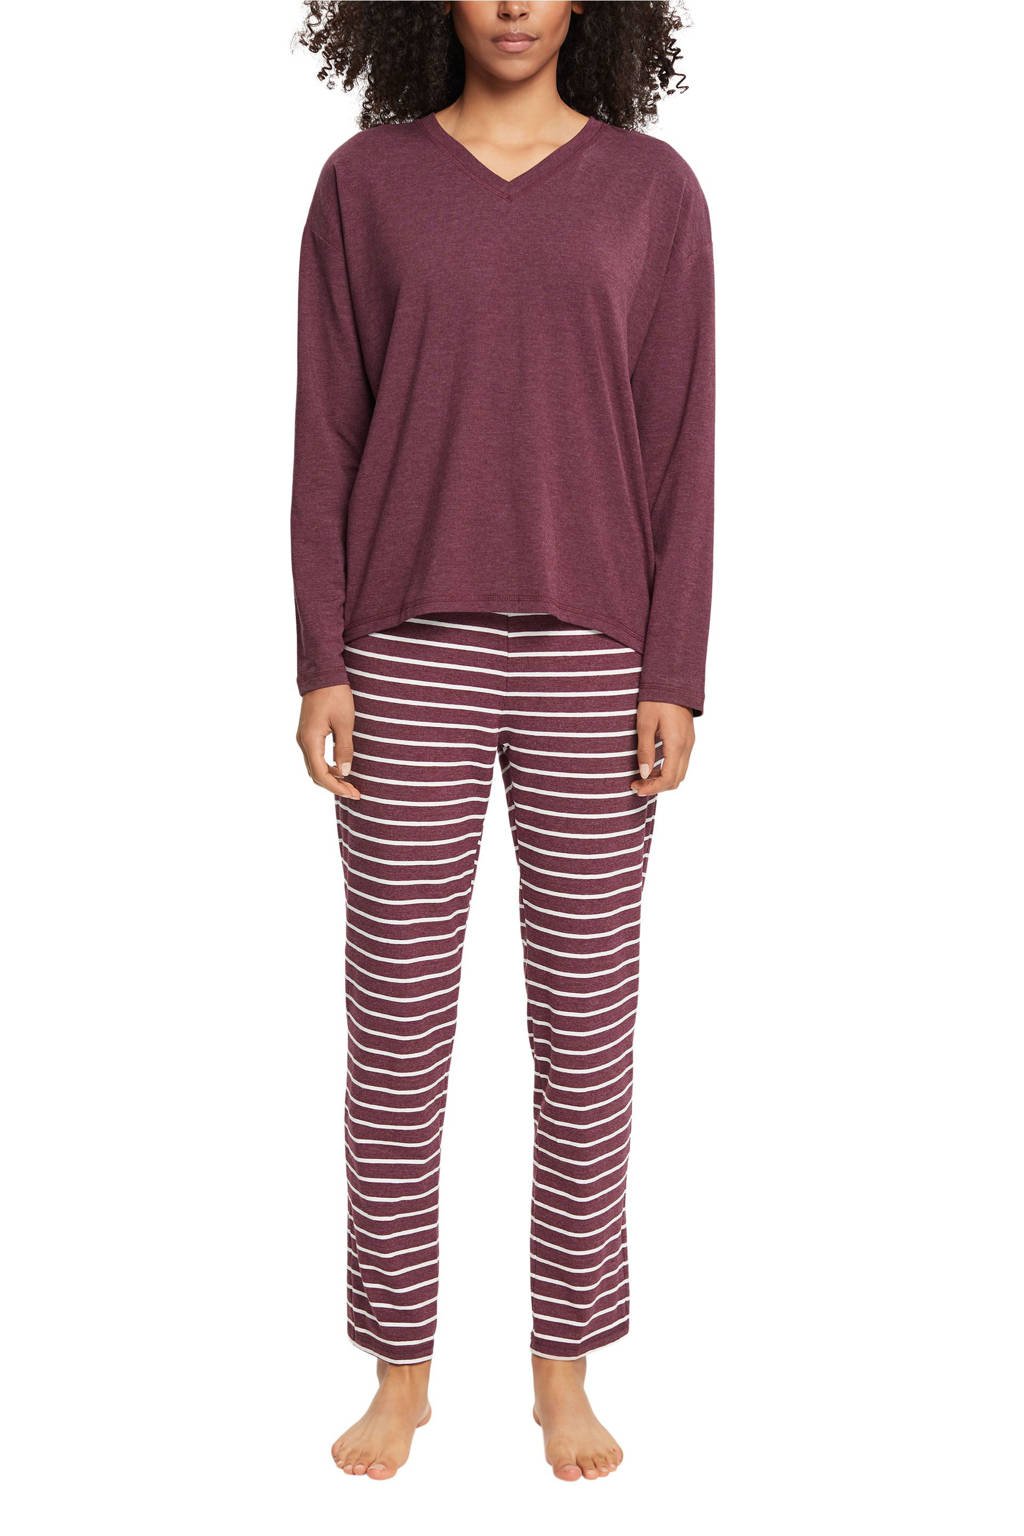 Beweren Maryanne Jones hybride ESPRIT Women Bodywear pyjama met strepen donkerrood/wit | wehkamp